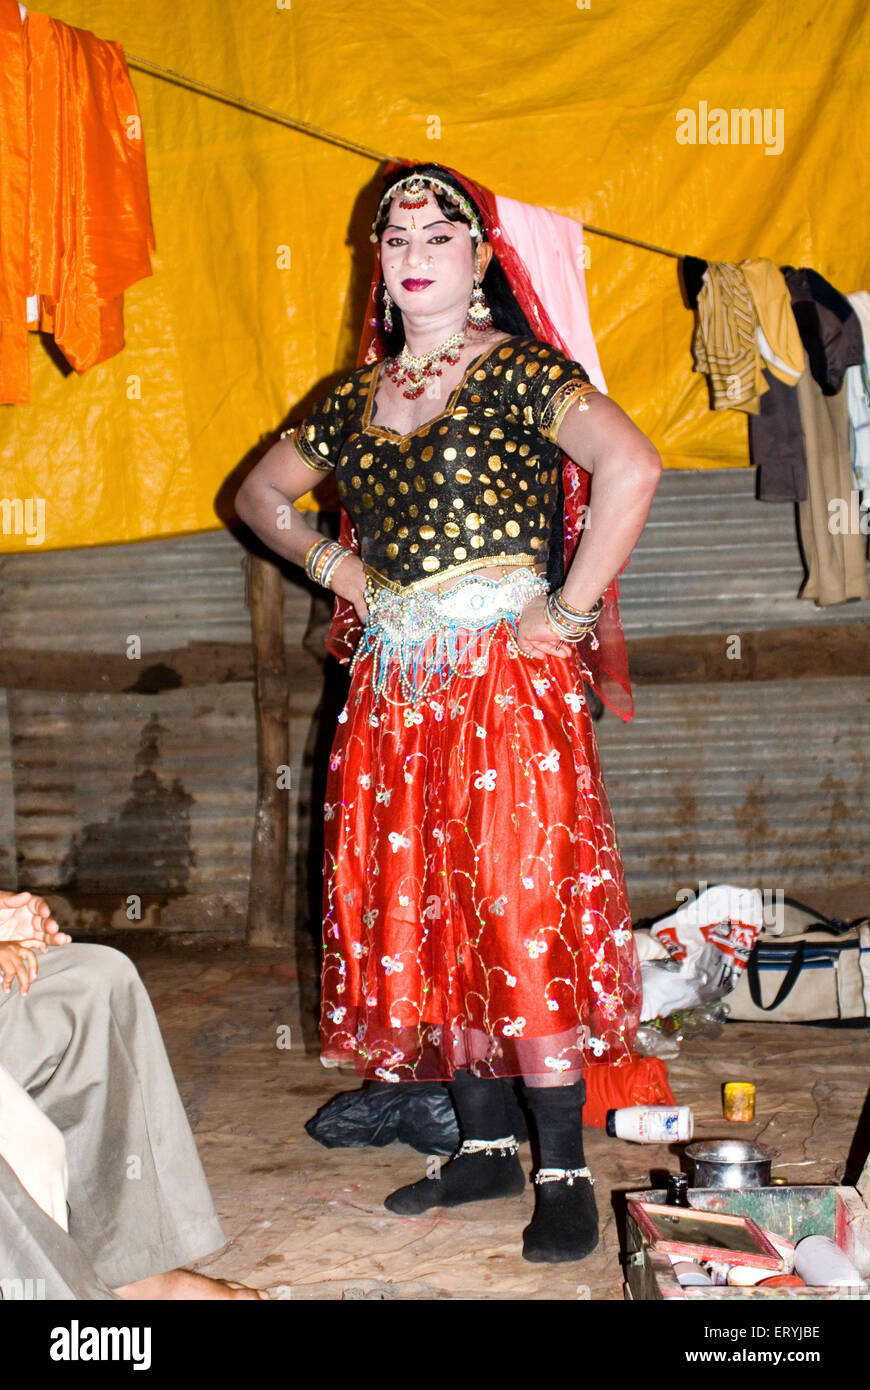 Männlicher Künstler als Frau gekleidet, Ramlila; Dussehra Festival, Indien, Asien Stockfoto